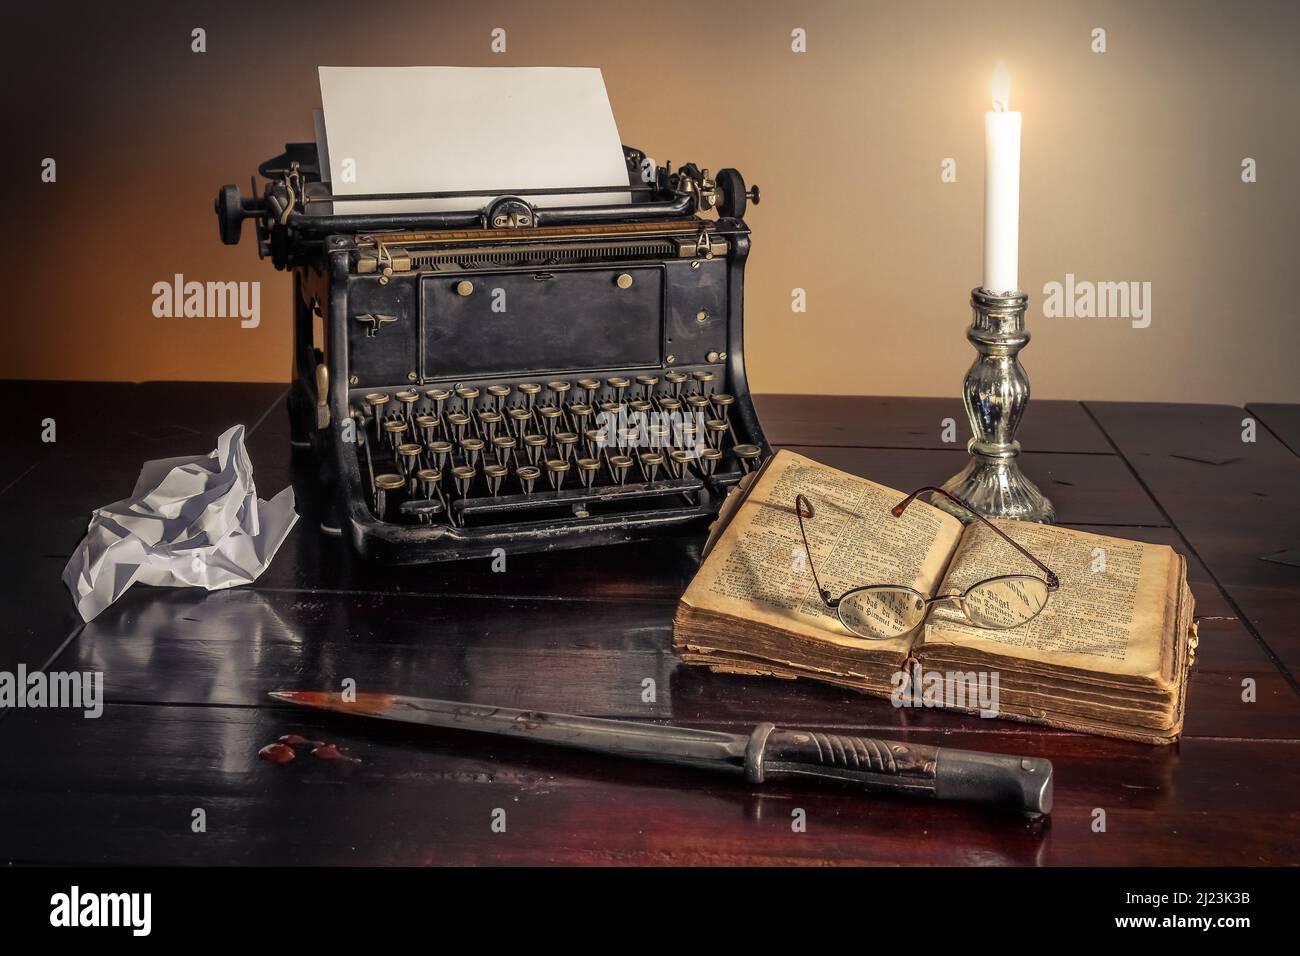 Une machine à écrire vintage sur une table à côté d'un couteau de meurtre et un livre.Un concept d'histoire de détective. Banque D'Images